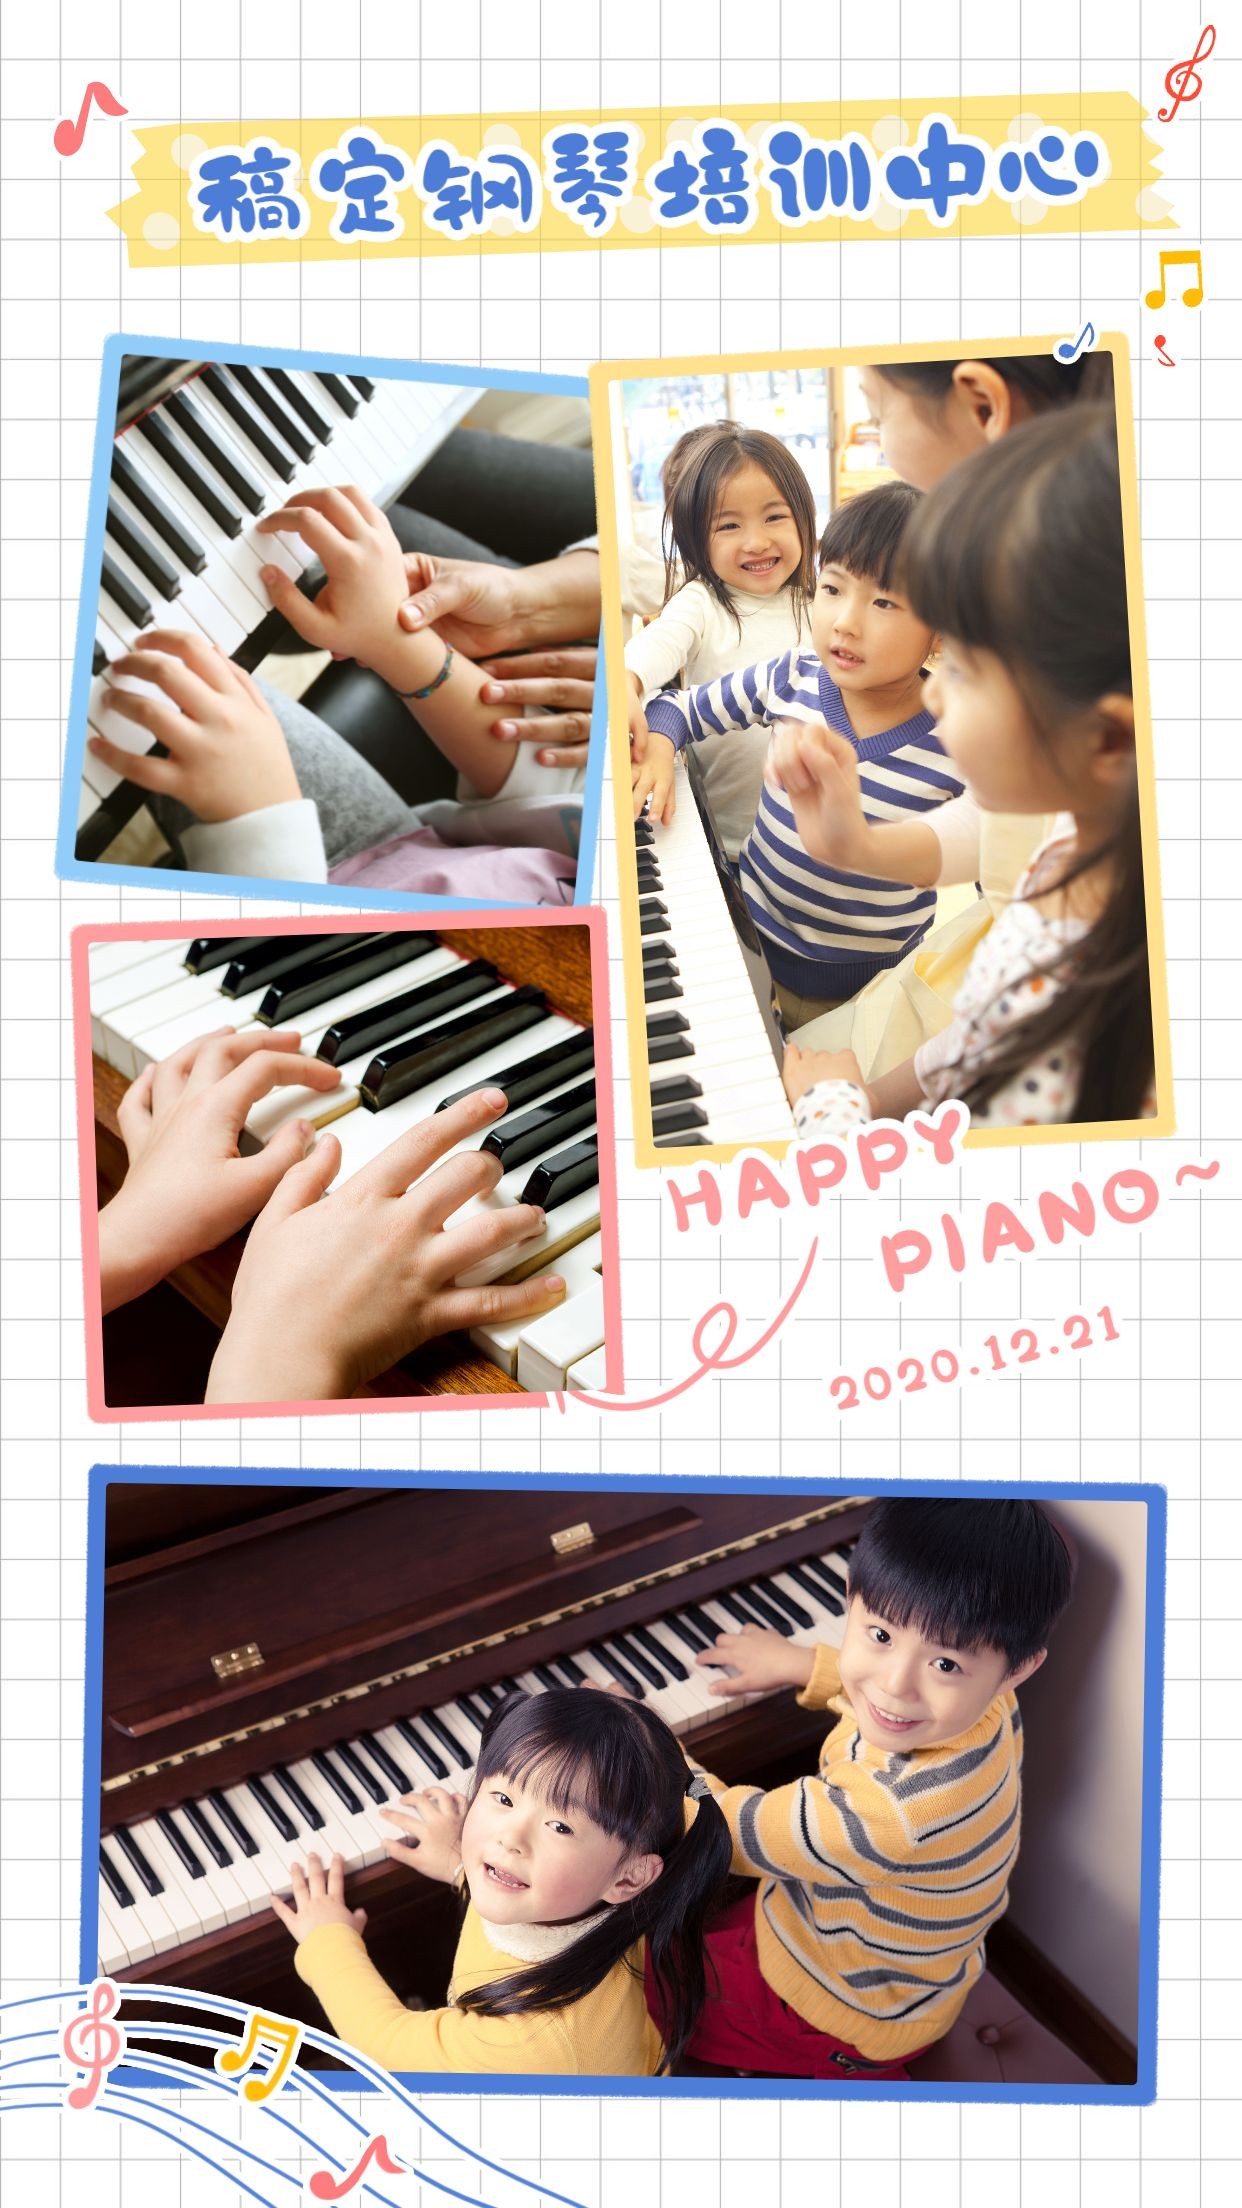 少儿钢琴音乐培训学习晒图晒照海报预览效果